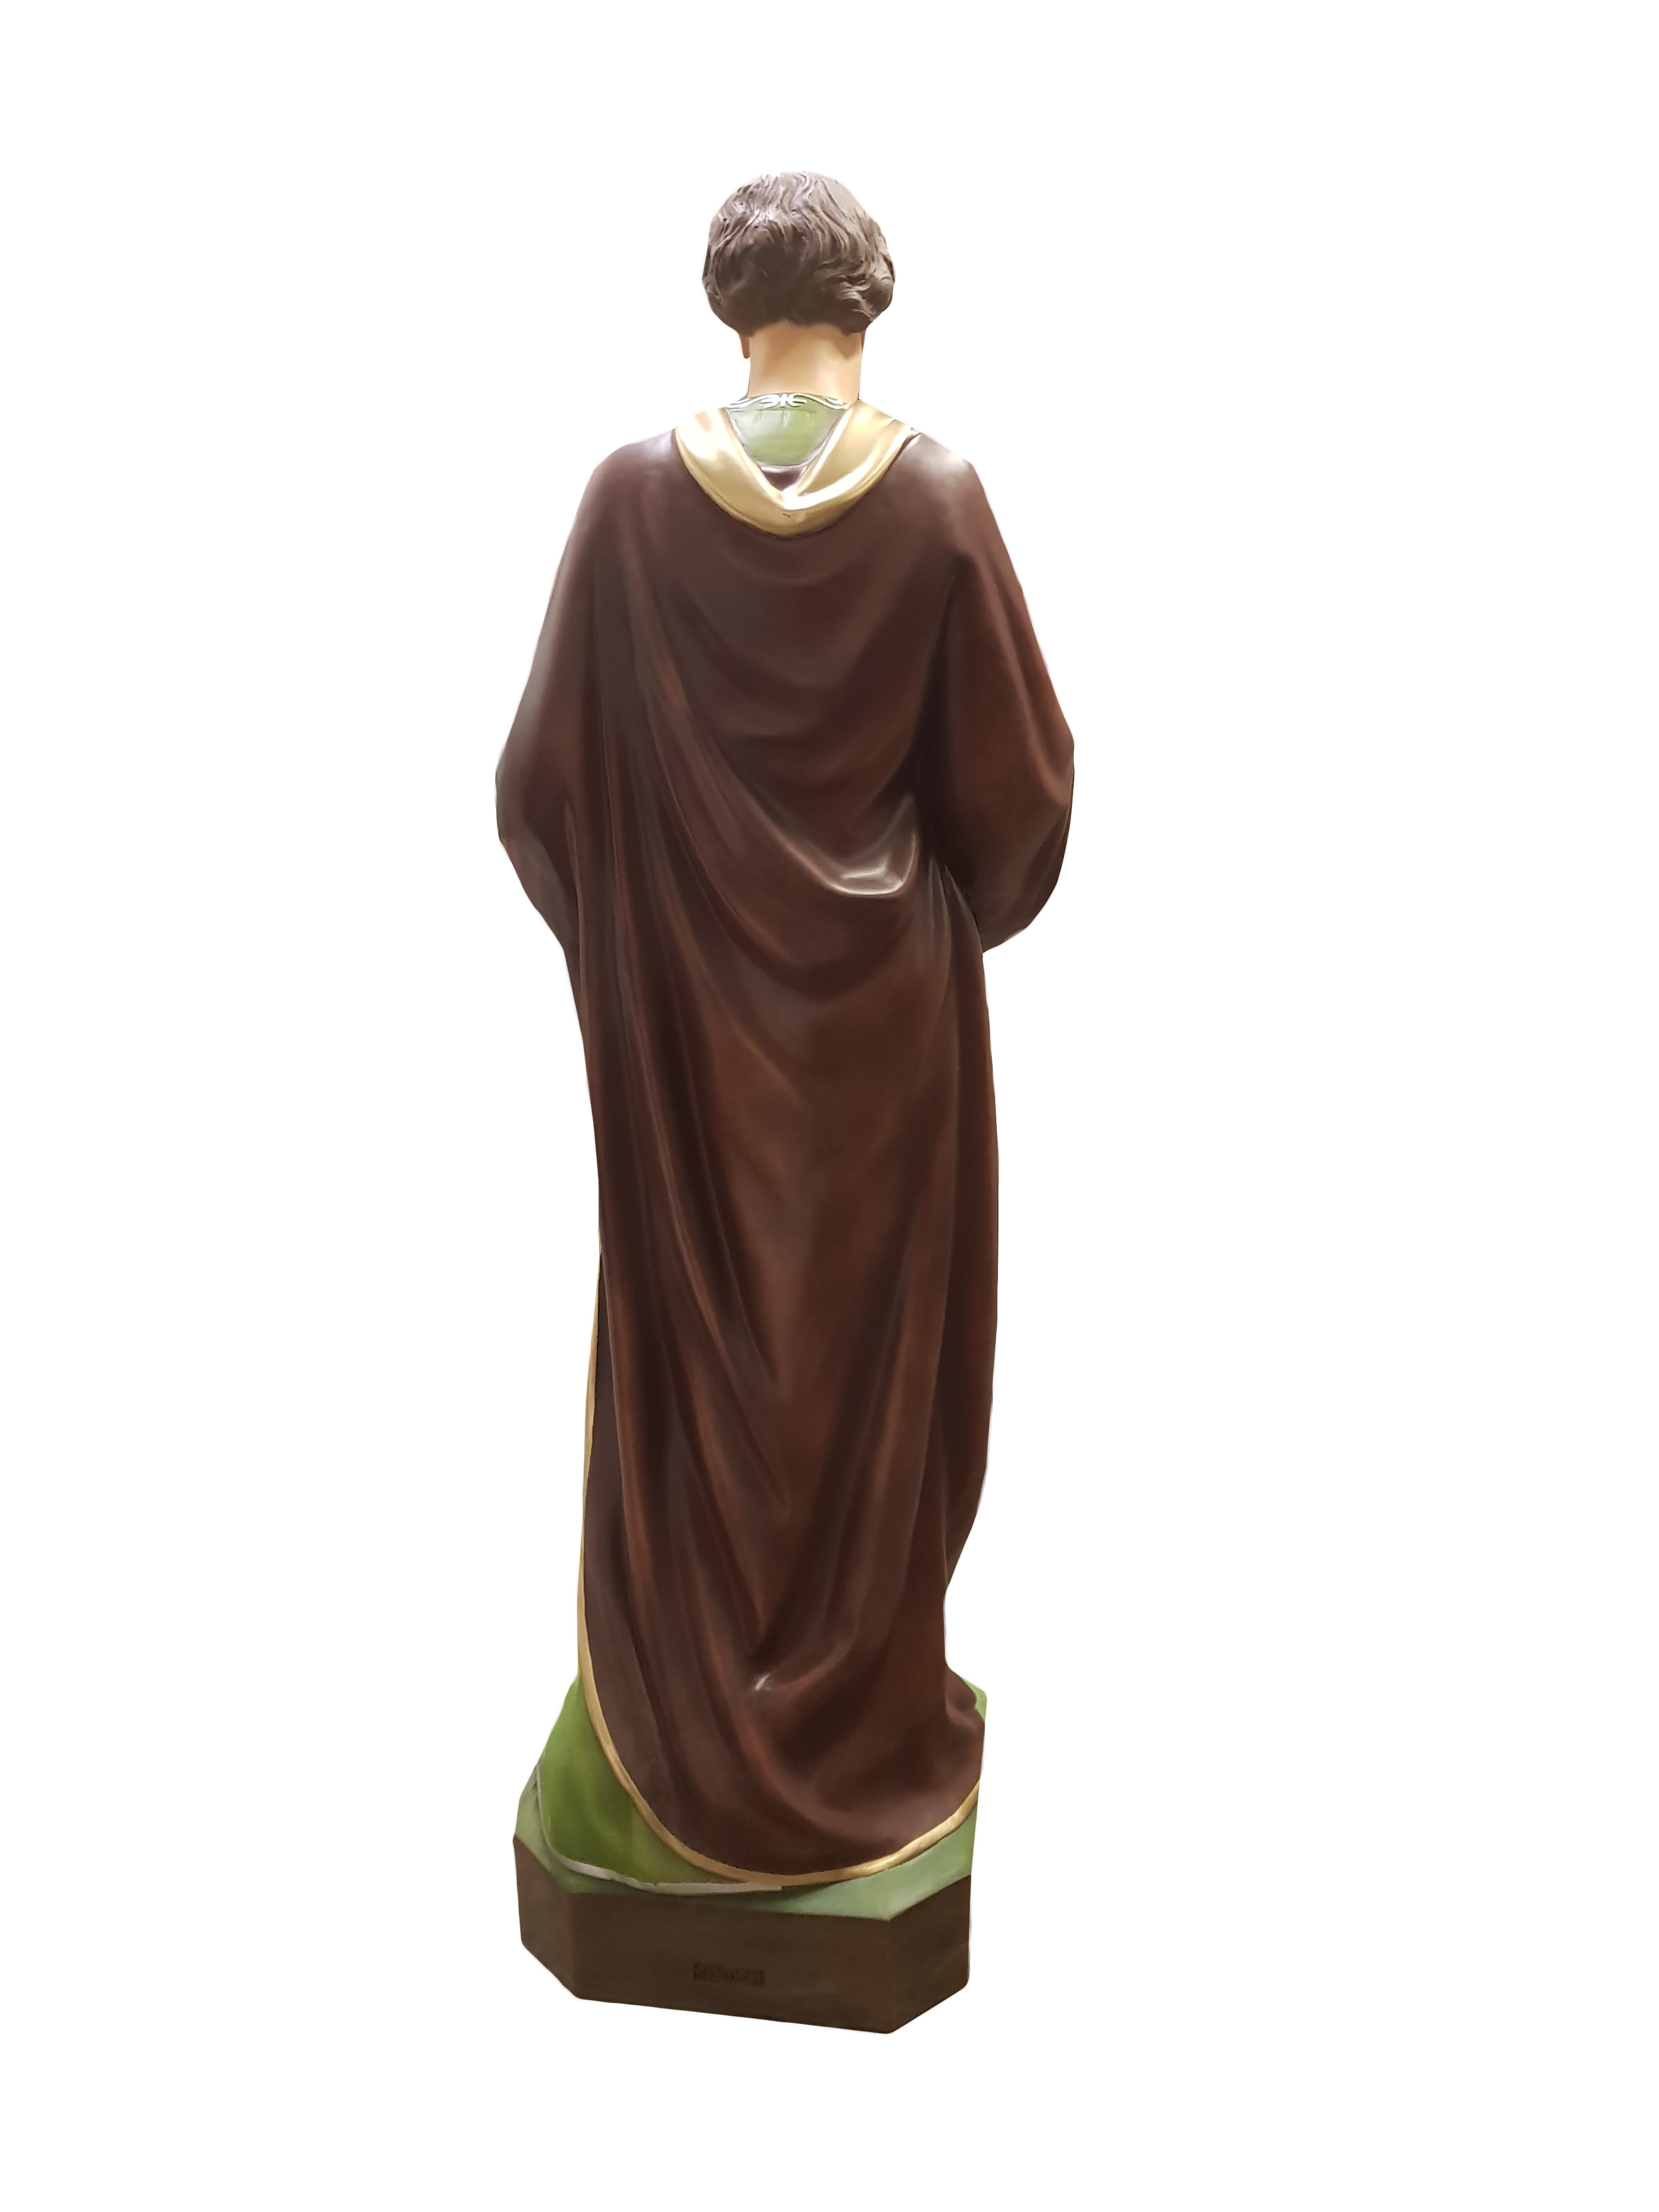 Święty Józef - Figura nagrobna - 155 cm - S08